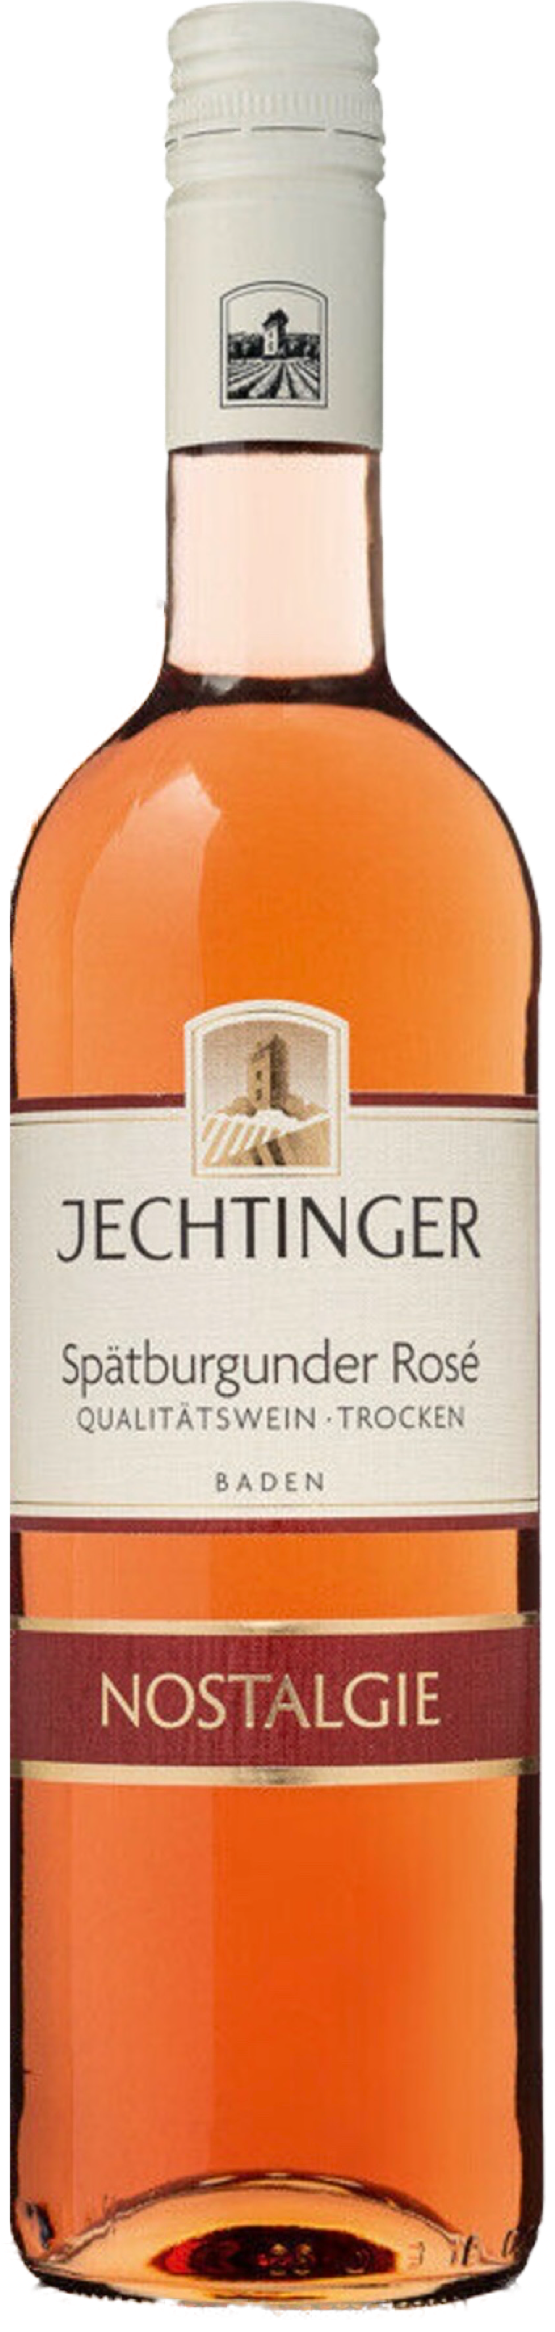 Jechtinger Nostalgie Spätburgunder Rosé trocken 13% vol. 0,75L